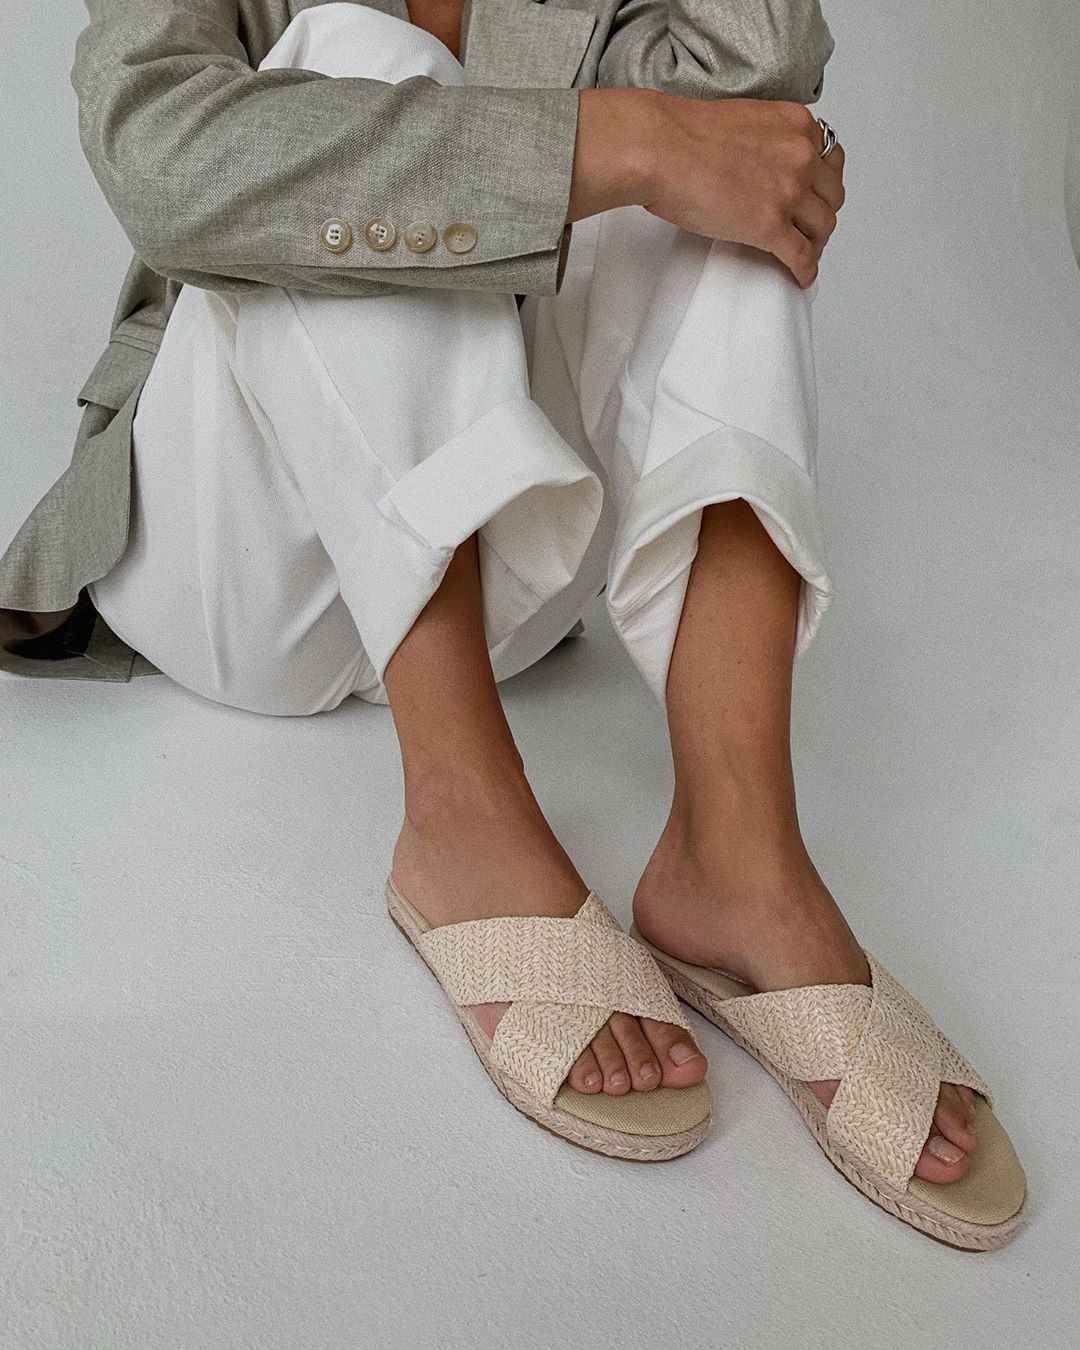 Mario Berluchi - Классические пантолеты выполнены из плетёной кожи молочного оттенка🥛
Открытая модель с перекрёстными ремешками превосходно подойдёт для создания стильного образа👌🏽
————
На фото:...